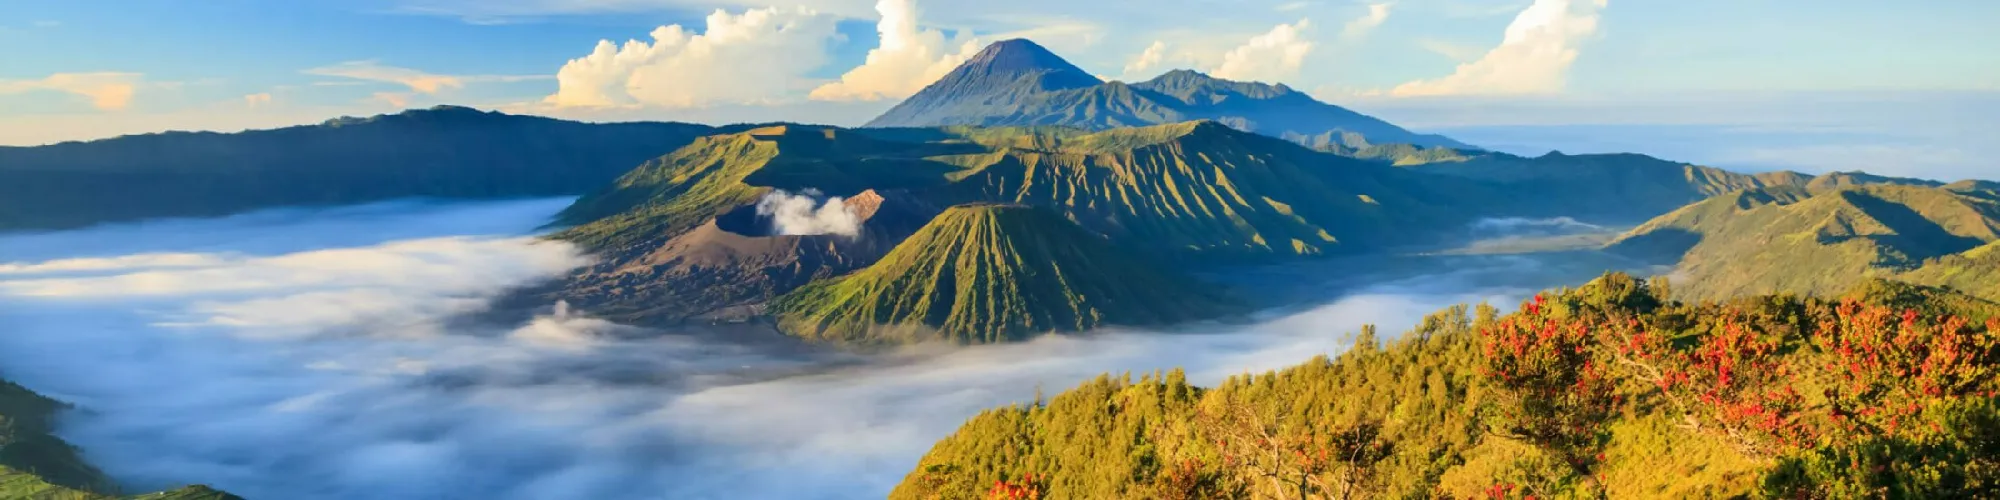 Pauschalreisen nach Indonesien background image